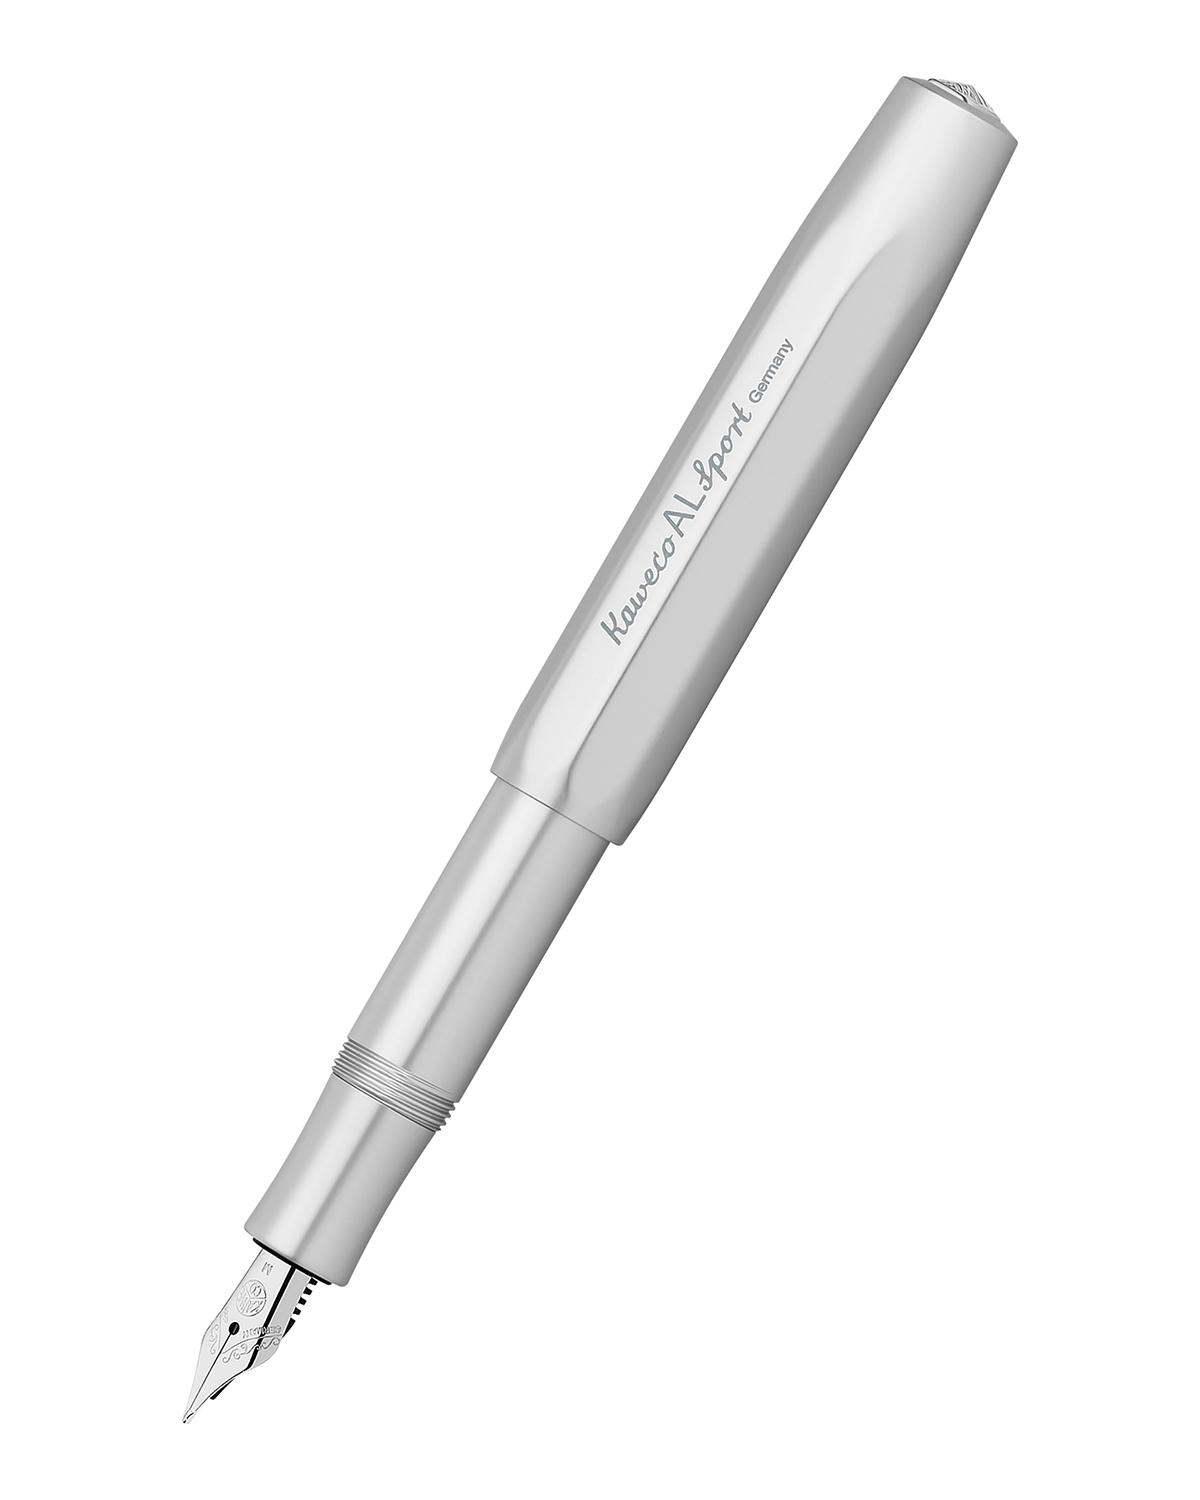 Перьевая ручка Kaweco AL Sport серебристая синие чернила EF 05 мм